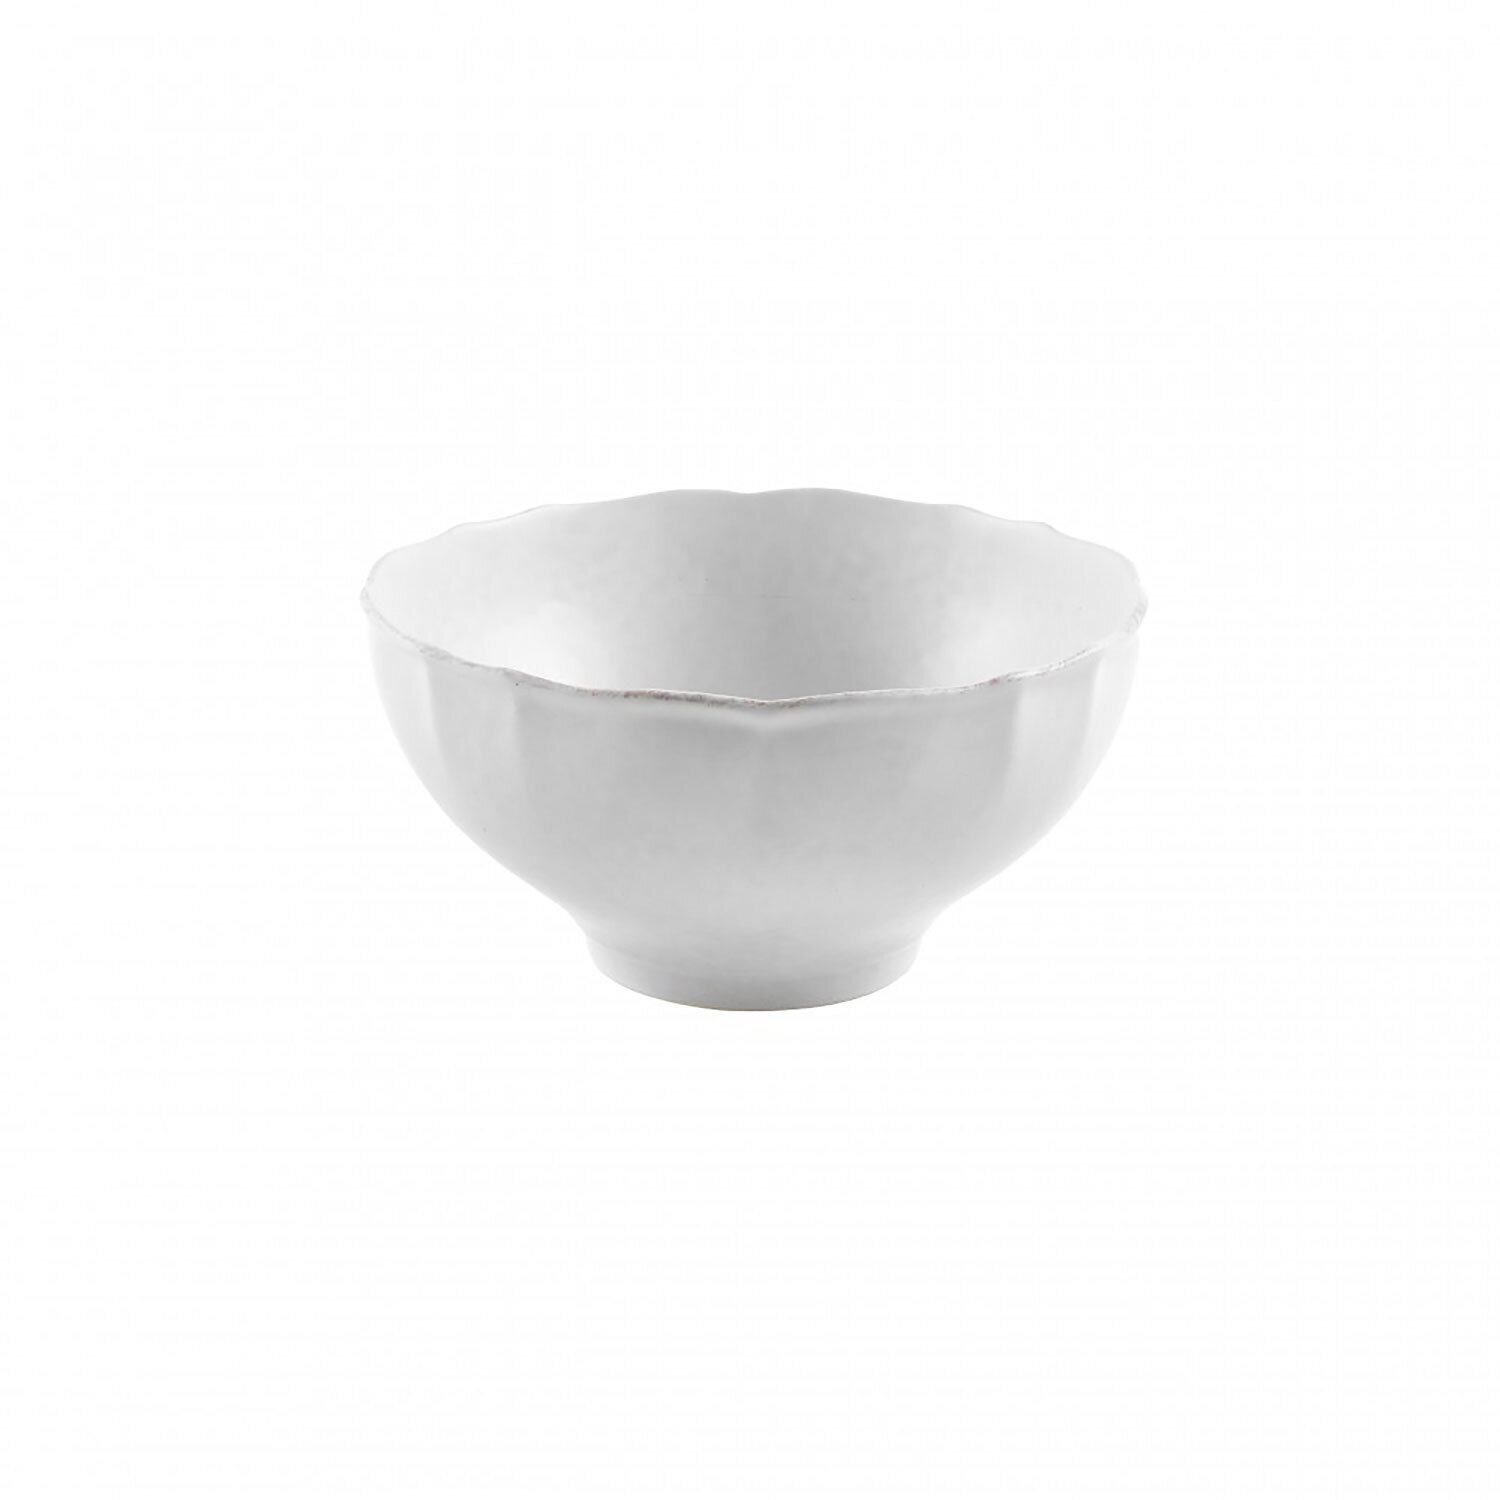 Casafina Impressions White Serving Bowl IM536-WHI